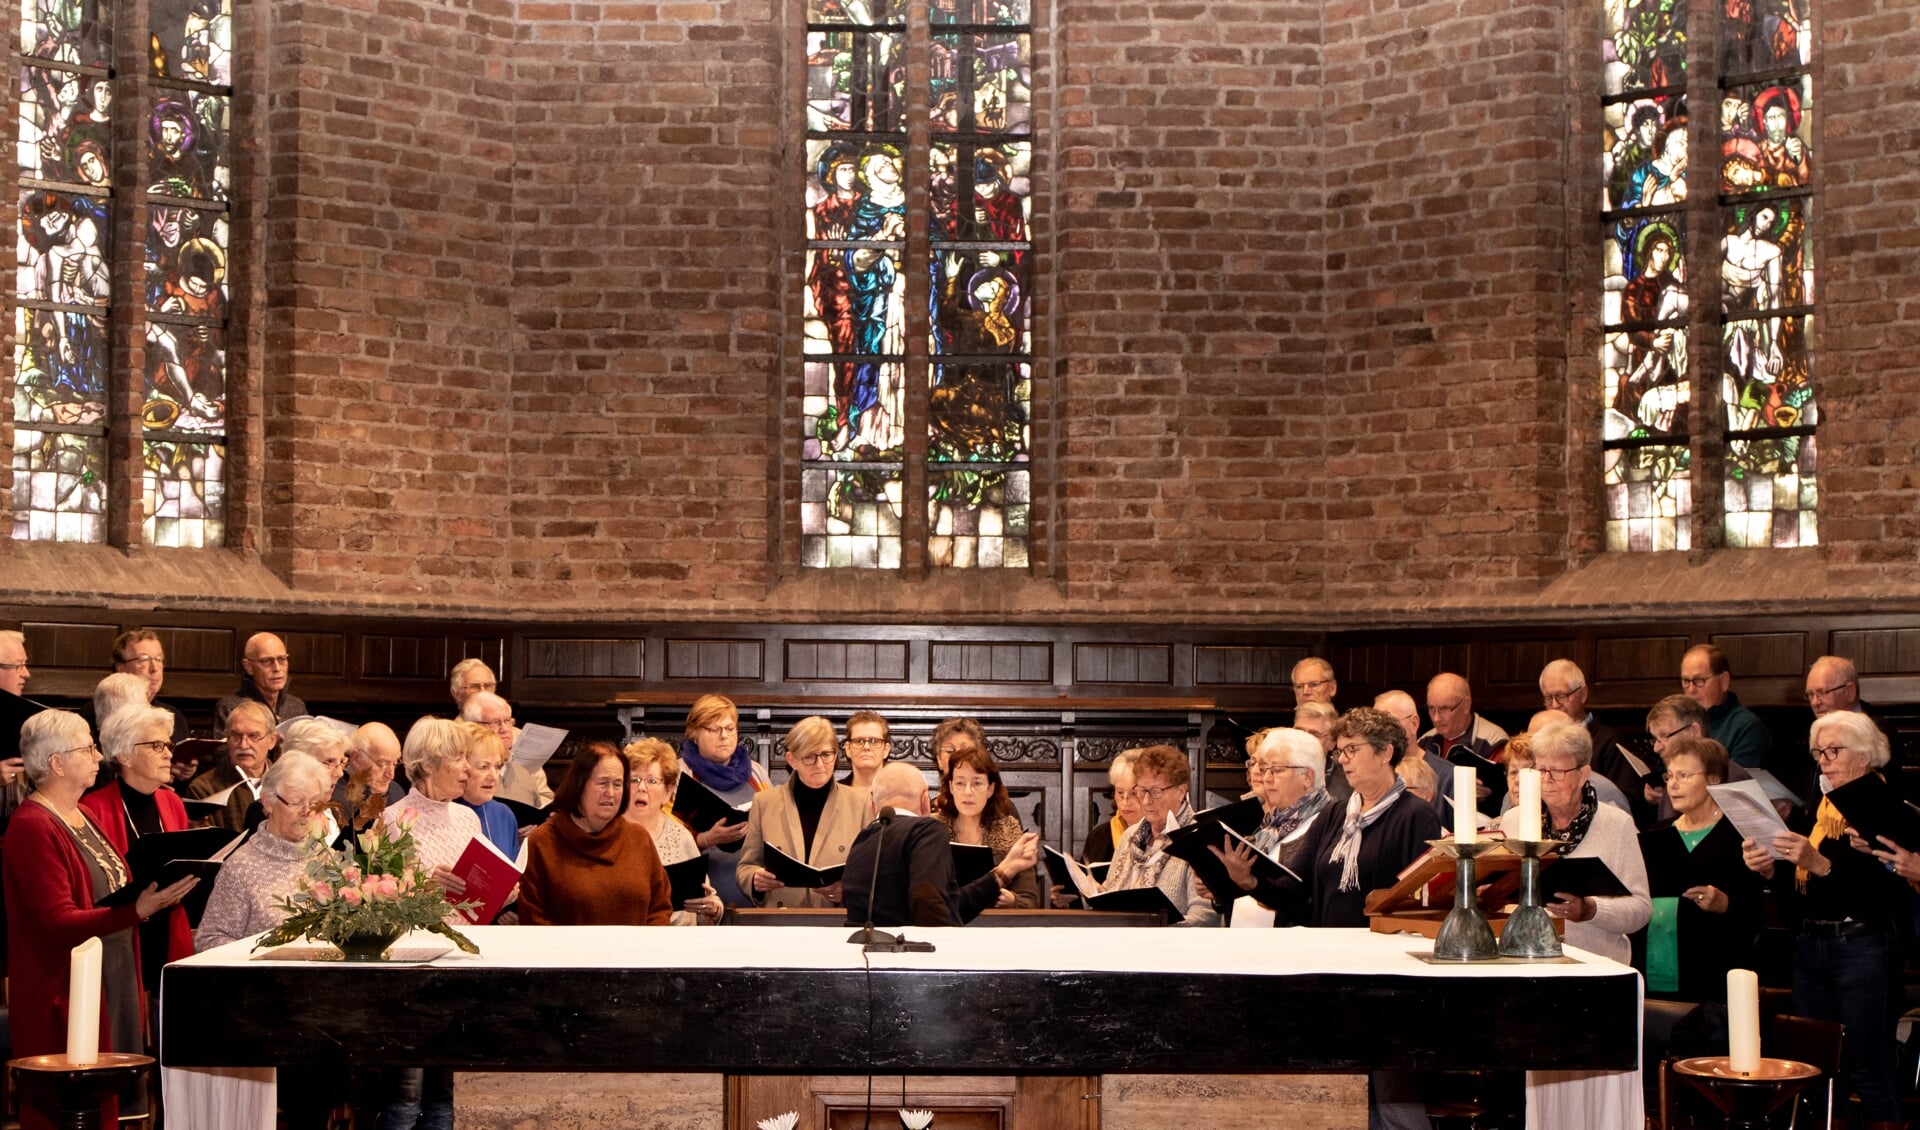 Het koor is druk aan het oefenen voor het Jubileumconcert in de RK kerk in Haalderen. (Foto: MarielleStokkink)